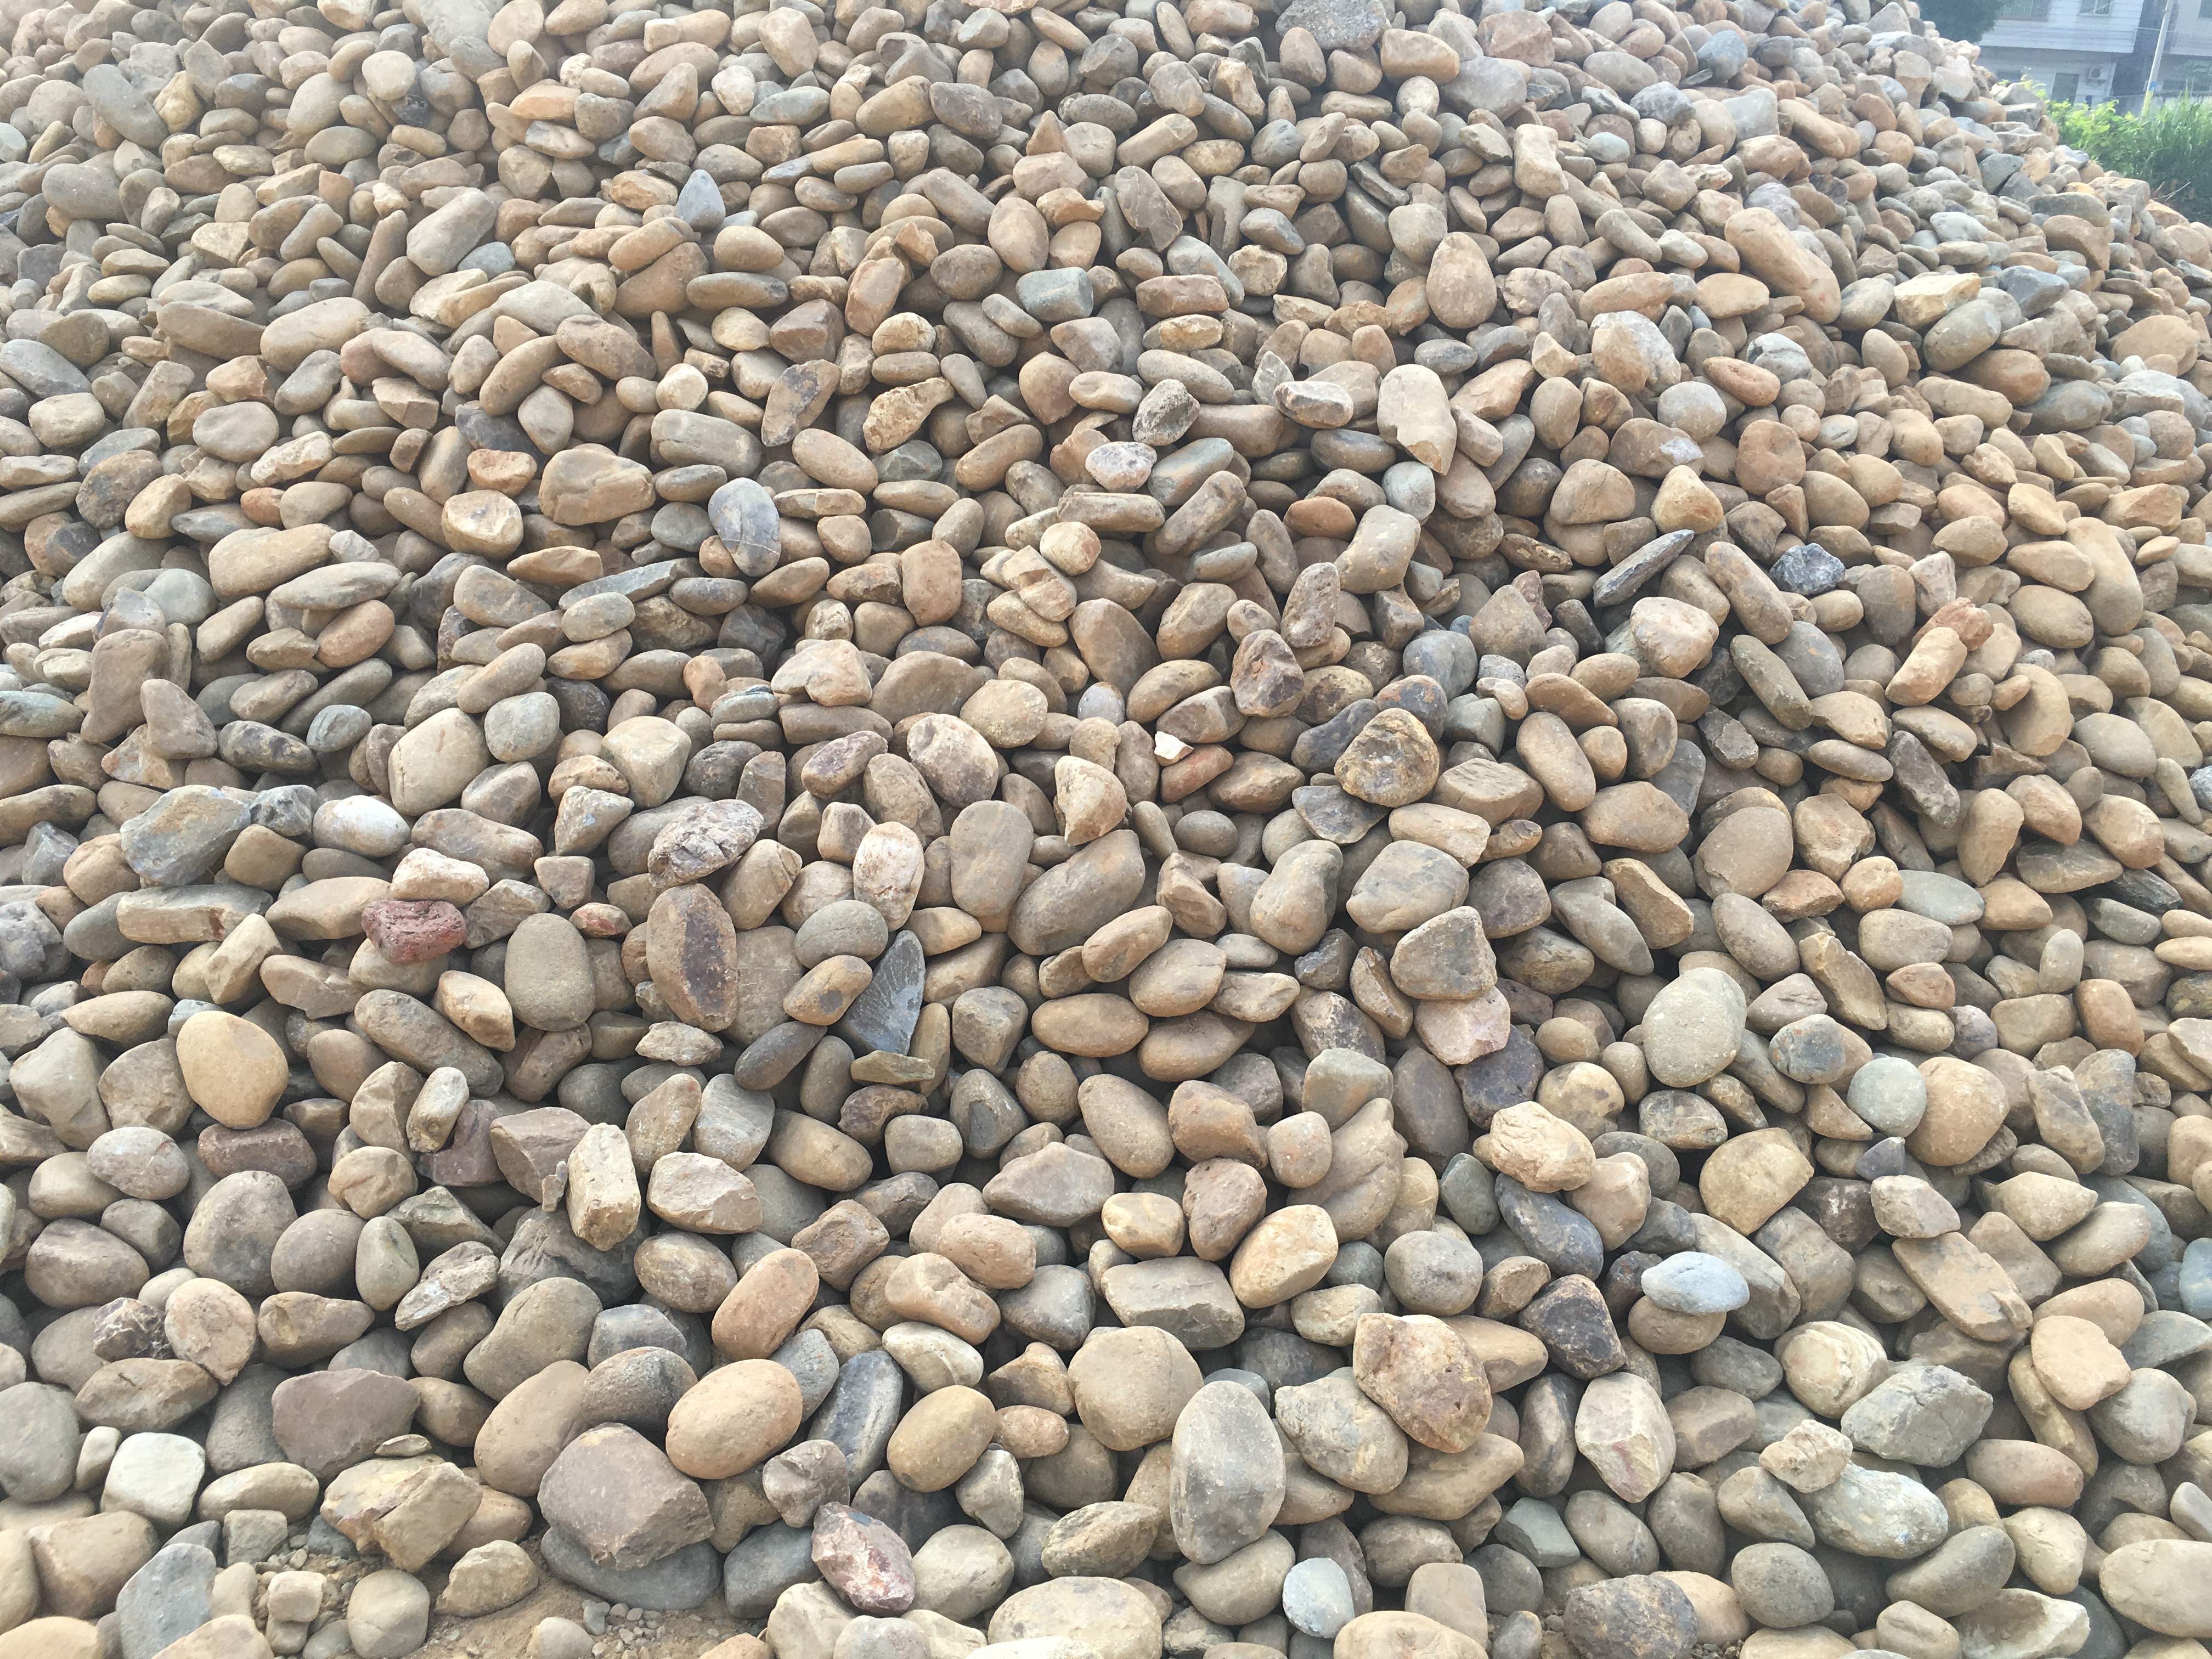 供应鹅卵石 机制鹅卵石 天然鹅卵石 大量批发鹅卵石厂家